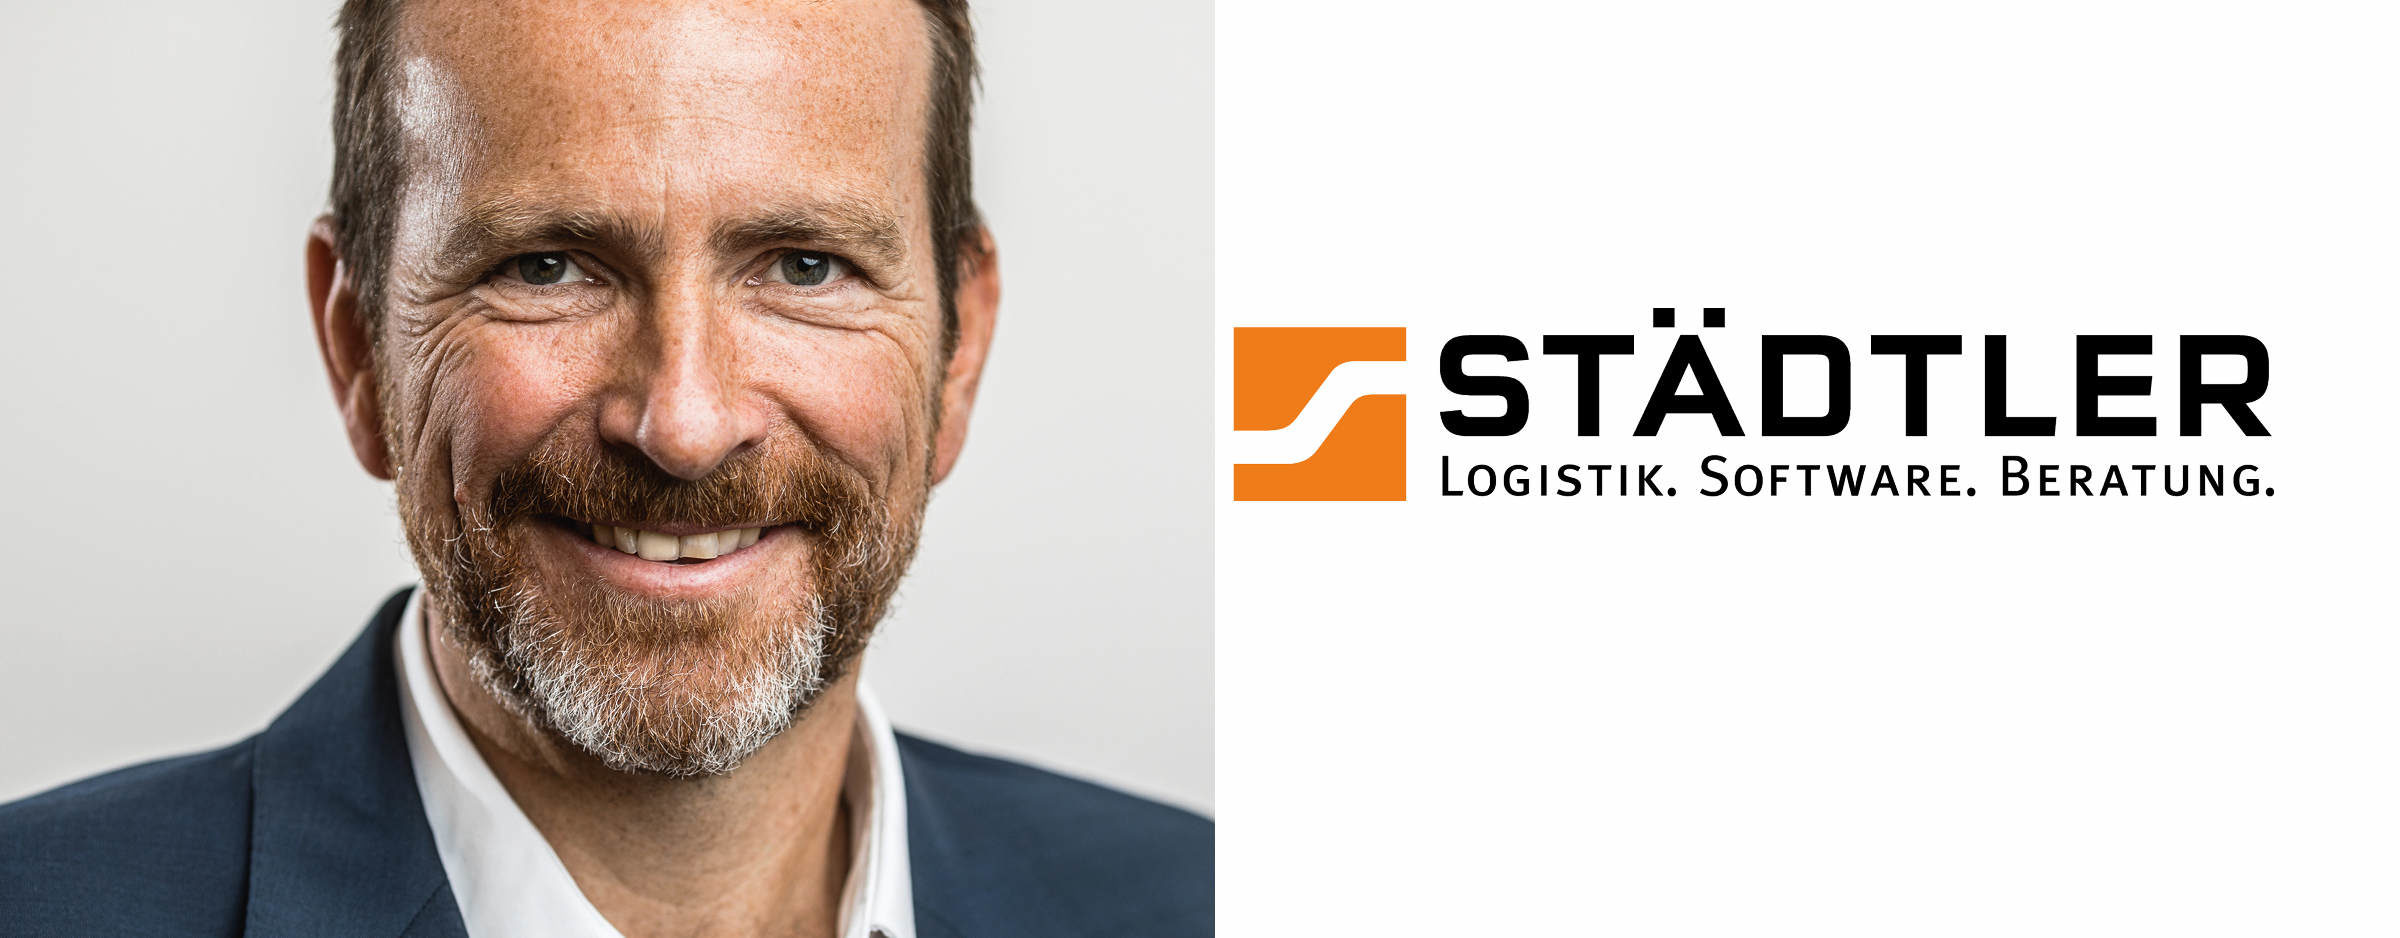 Stefan Anschütz wird Co-Geschäftsführer der Städtler Logistik GmbH